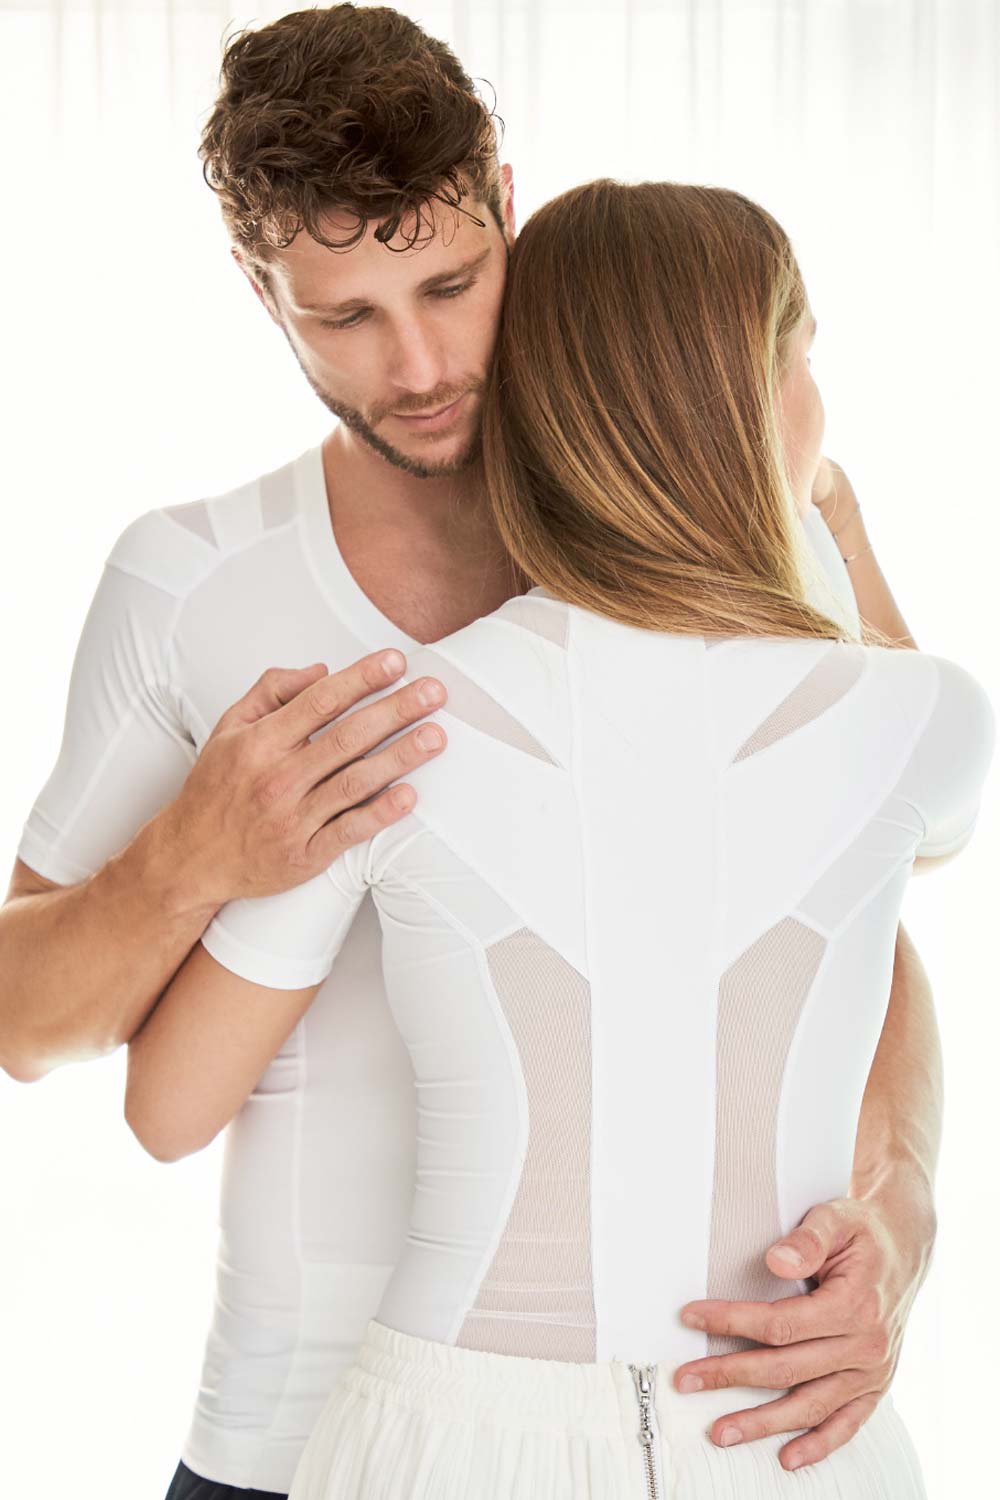 Women's Posture Shirt™ Zipper - White